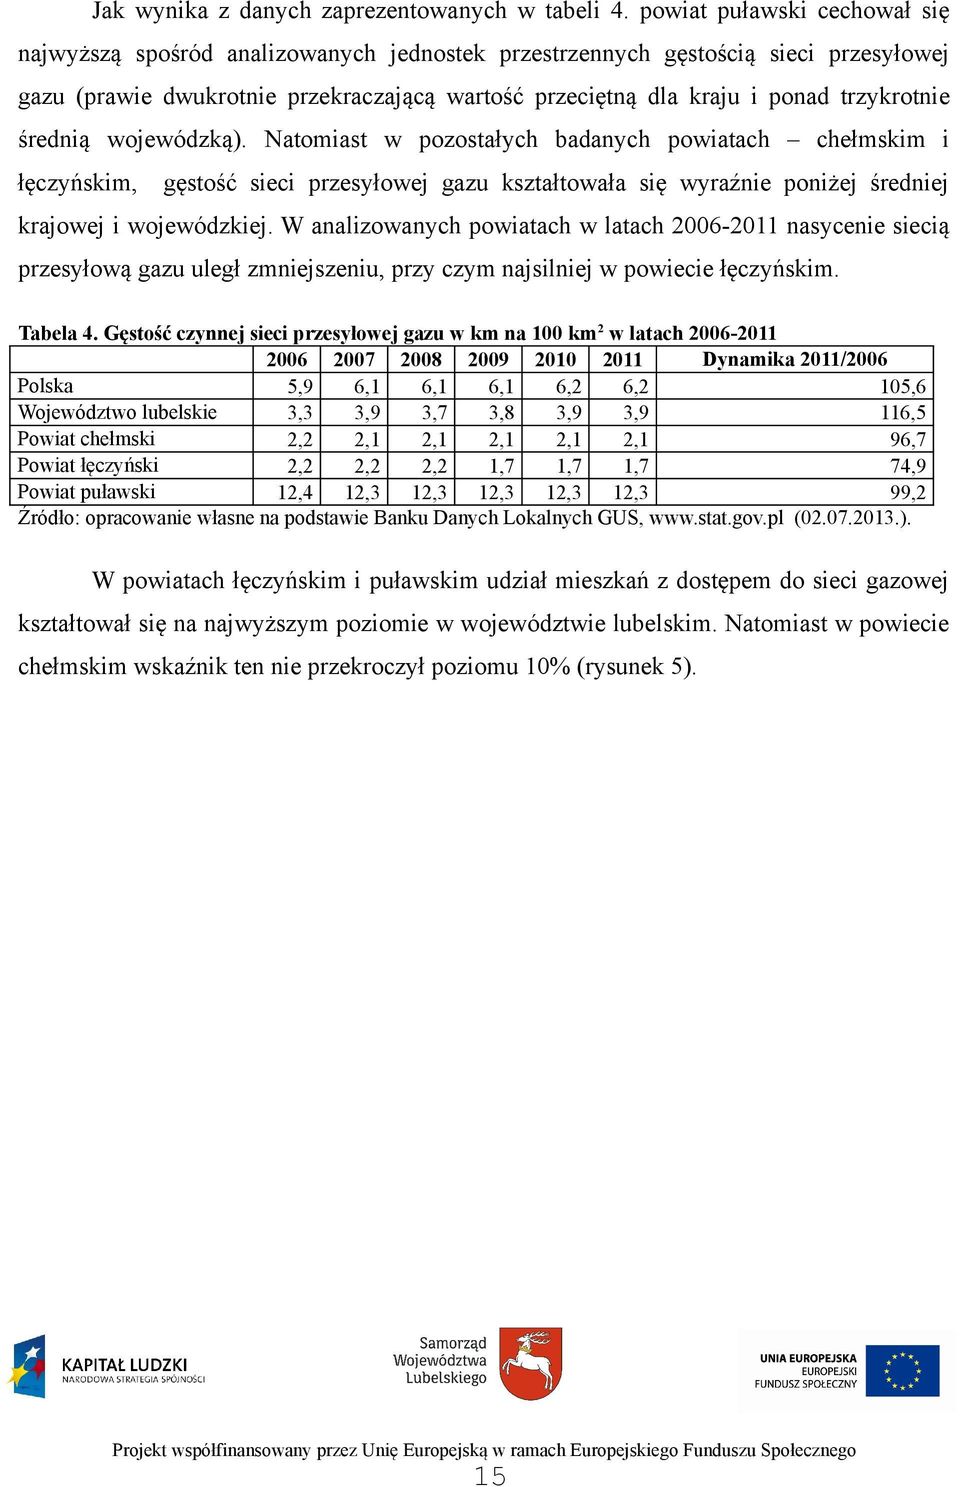 trzykrotnie średnią wojewódzką). Natomiast w pozostałych badanych powiatach chełmskim i łęczyńskim, gęstość sieci przesyłowej gazu kształtowała się wyraźnie poniżej średniej krajowej i wojewódzkiej.